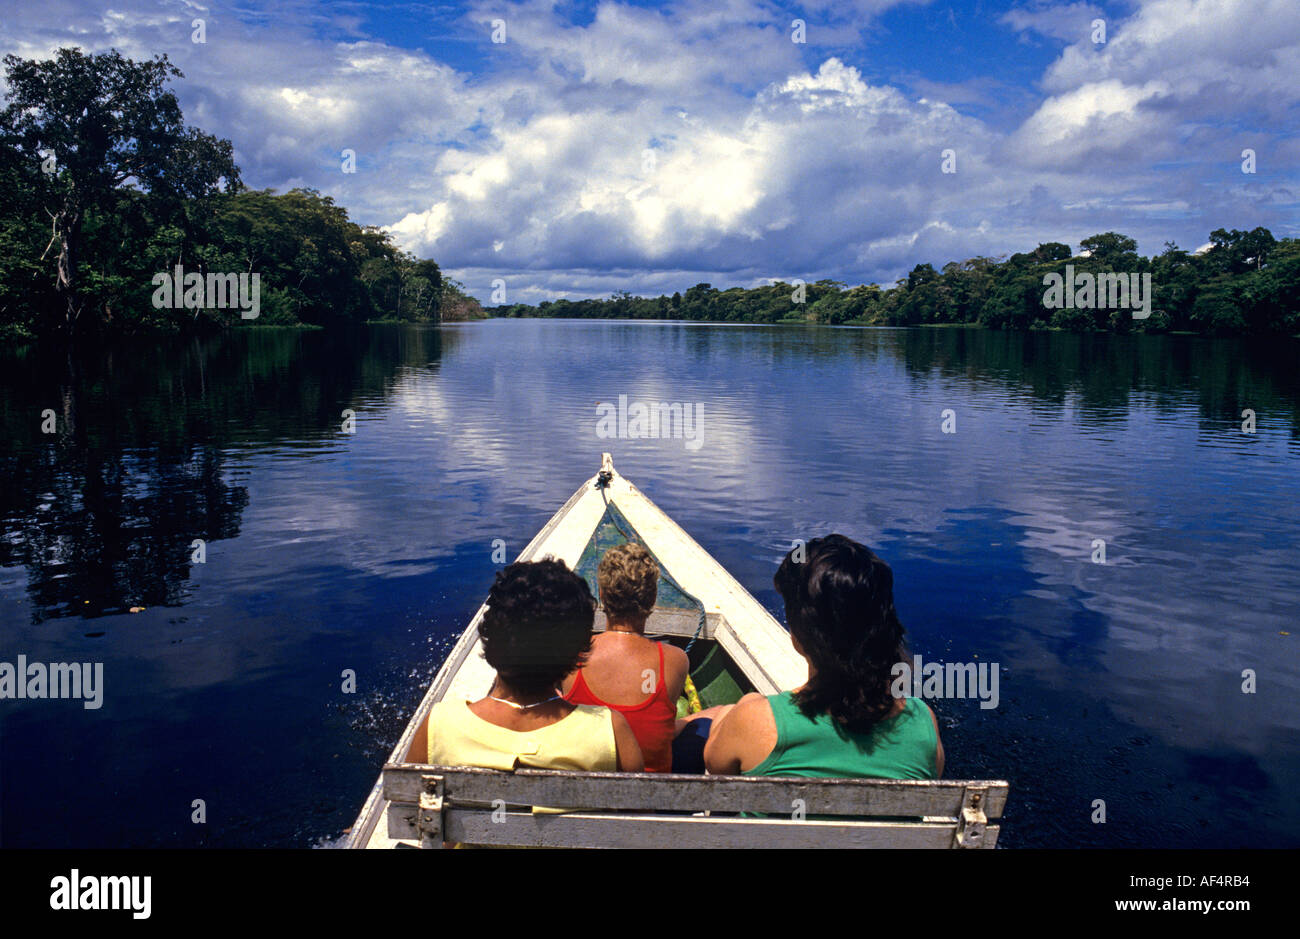 Due lady visitatori in locale in stile piroga canoa sulle acque di un fiume in uno scenario della foresta pluviale nella regione amazzonica del Brasile Foto Stock